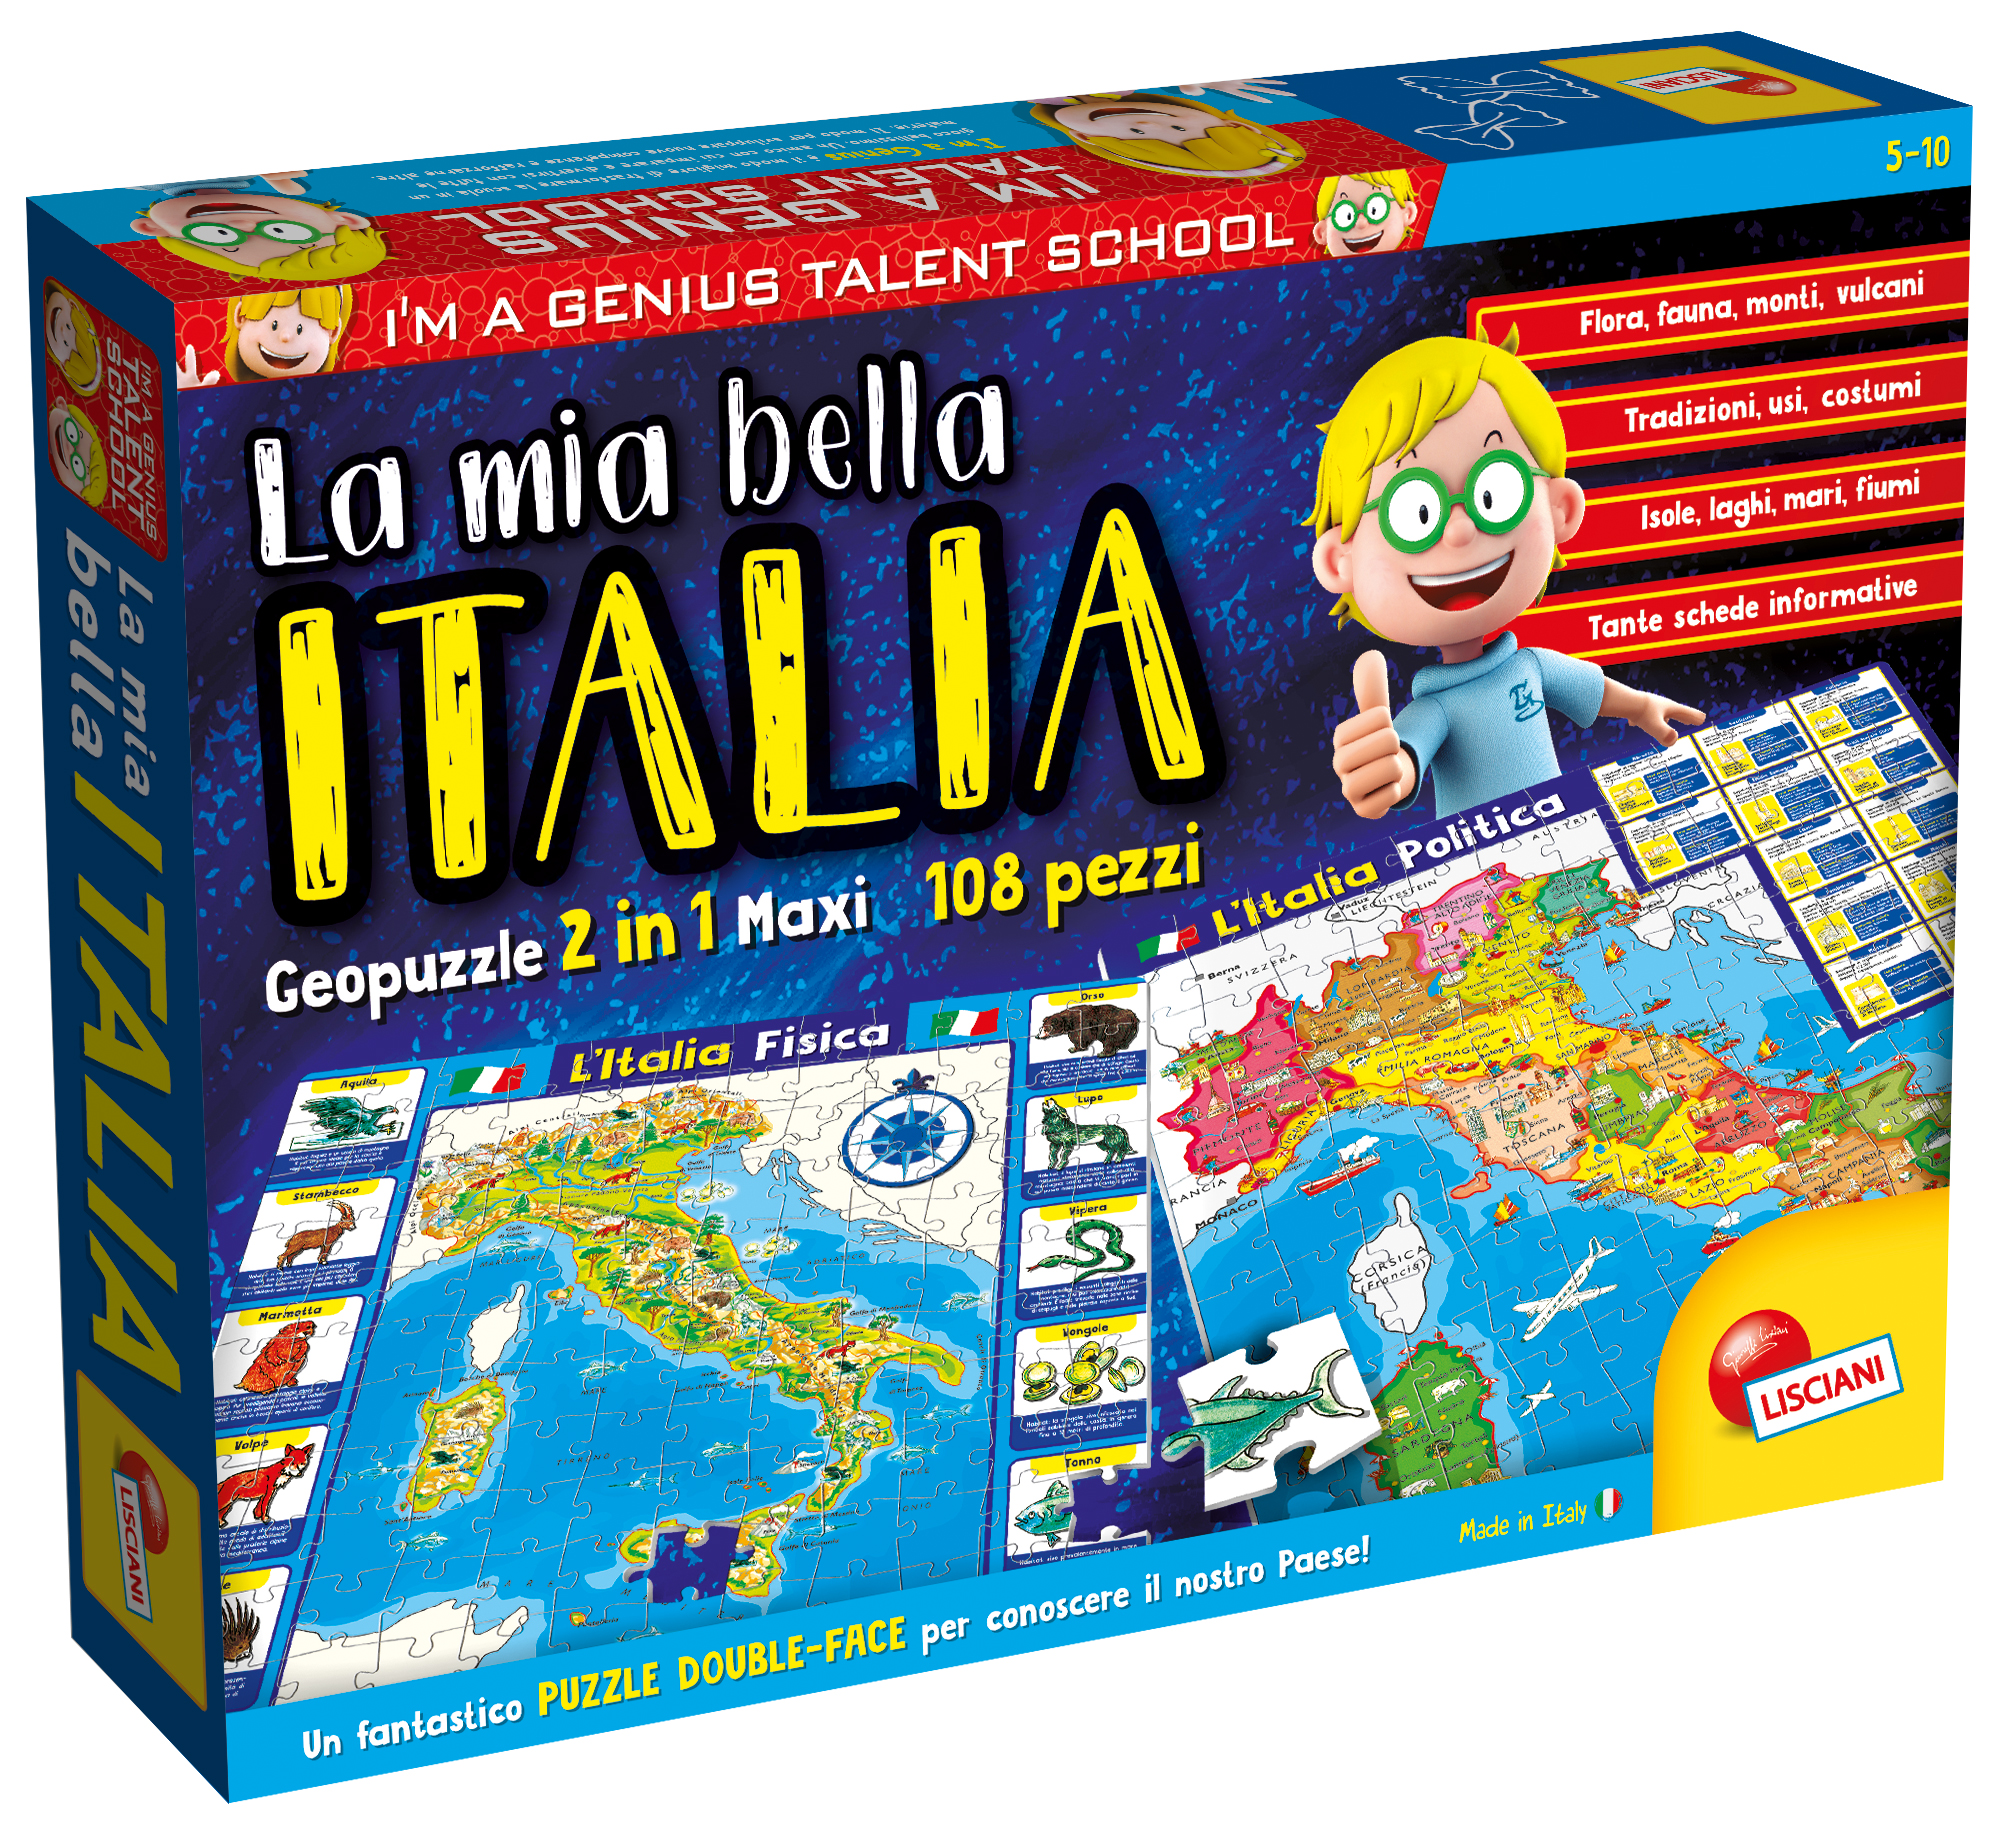 Foto 1 del gioco I'M A GENIUS GEOPUZZLE LA MIA BELLA ITALIA